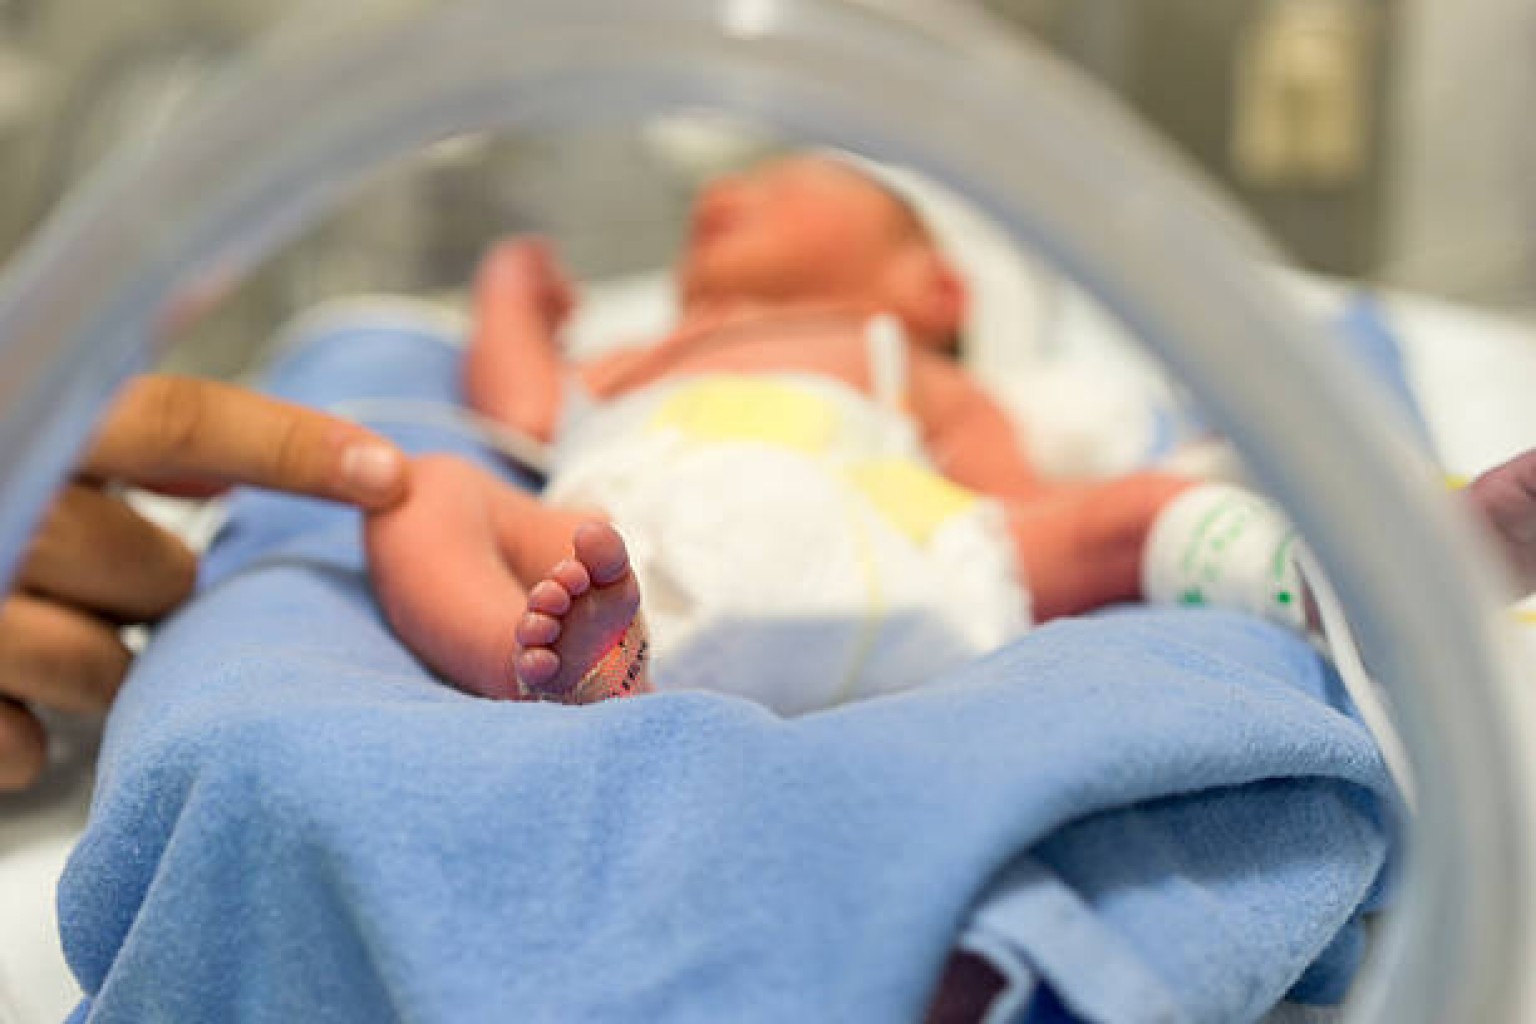 Proyecto de ley Prohibiría Ciudadanía a bebés de indocumentados